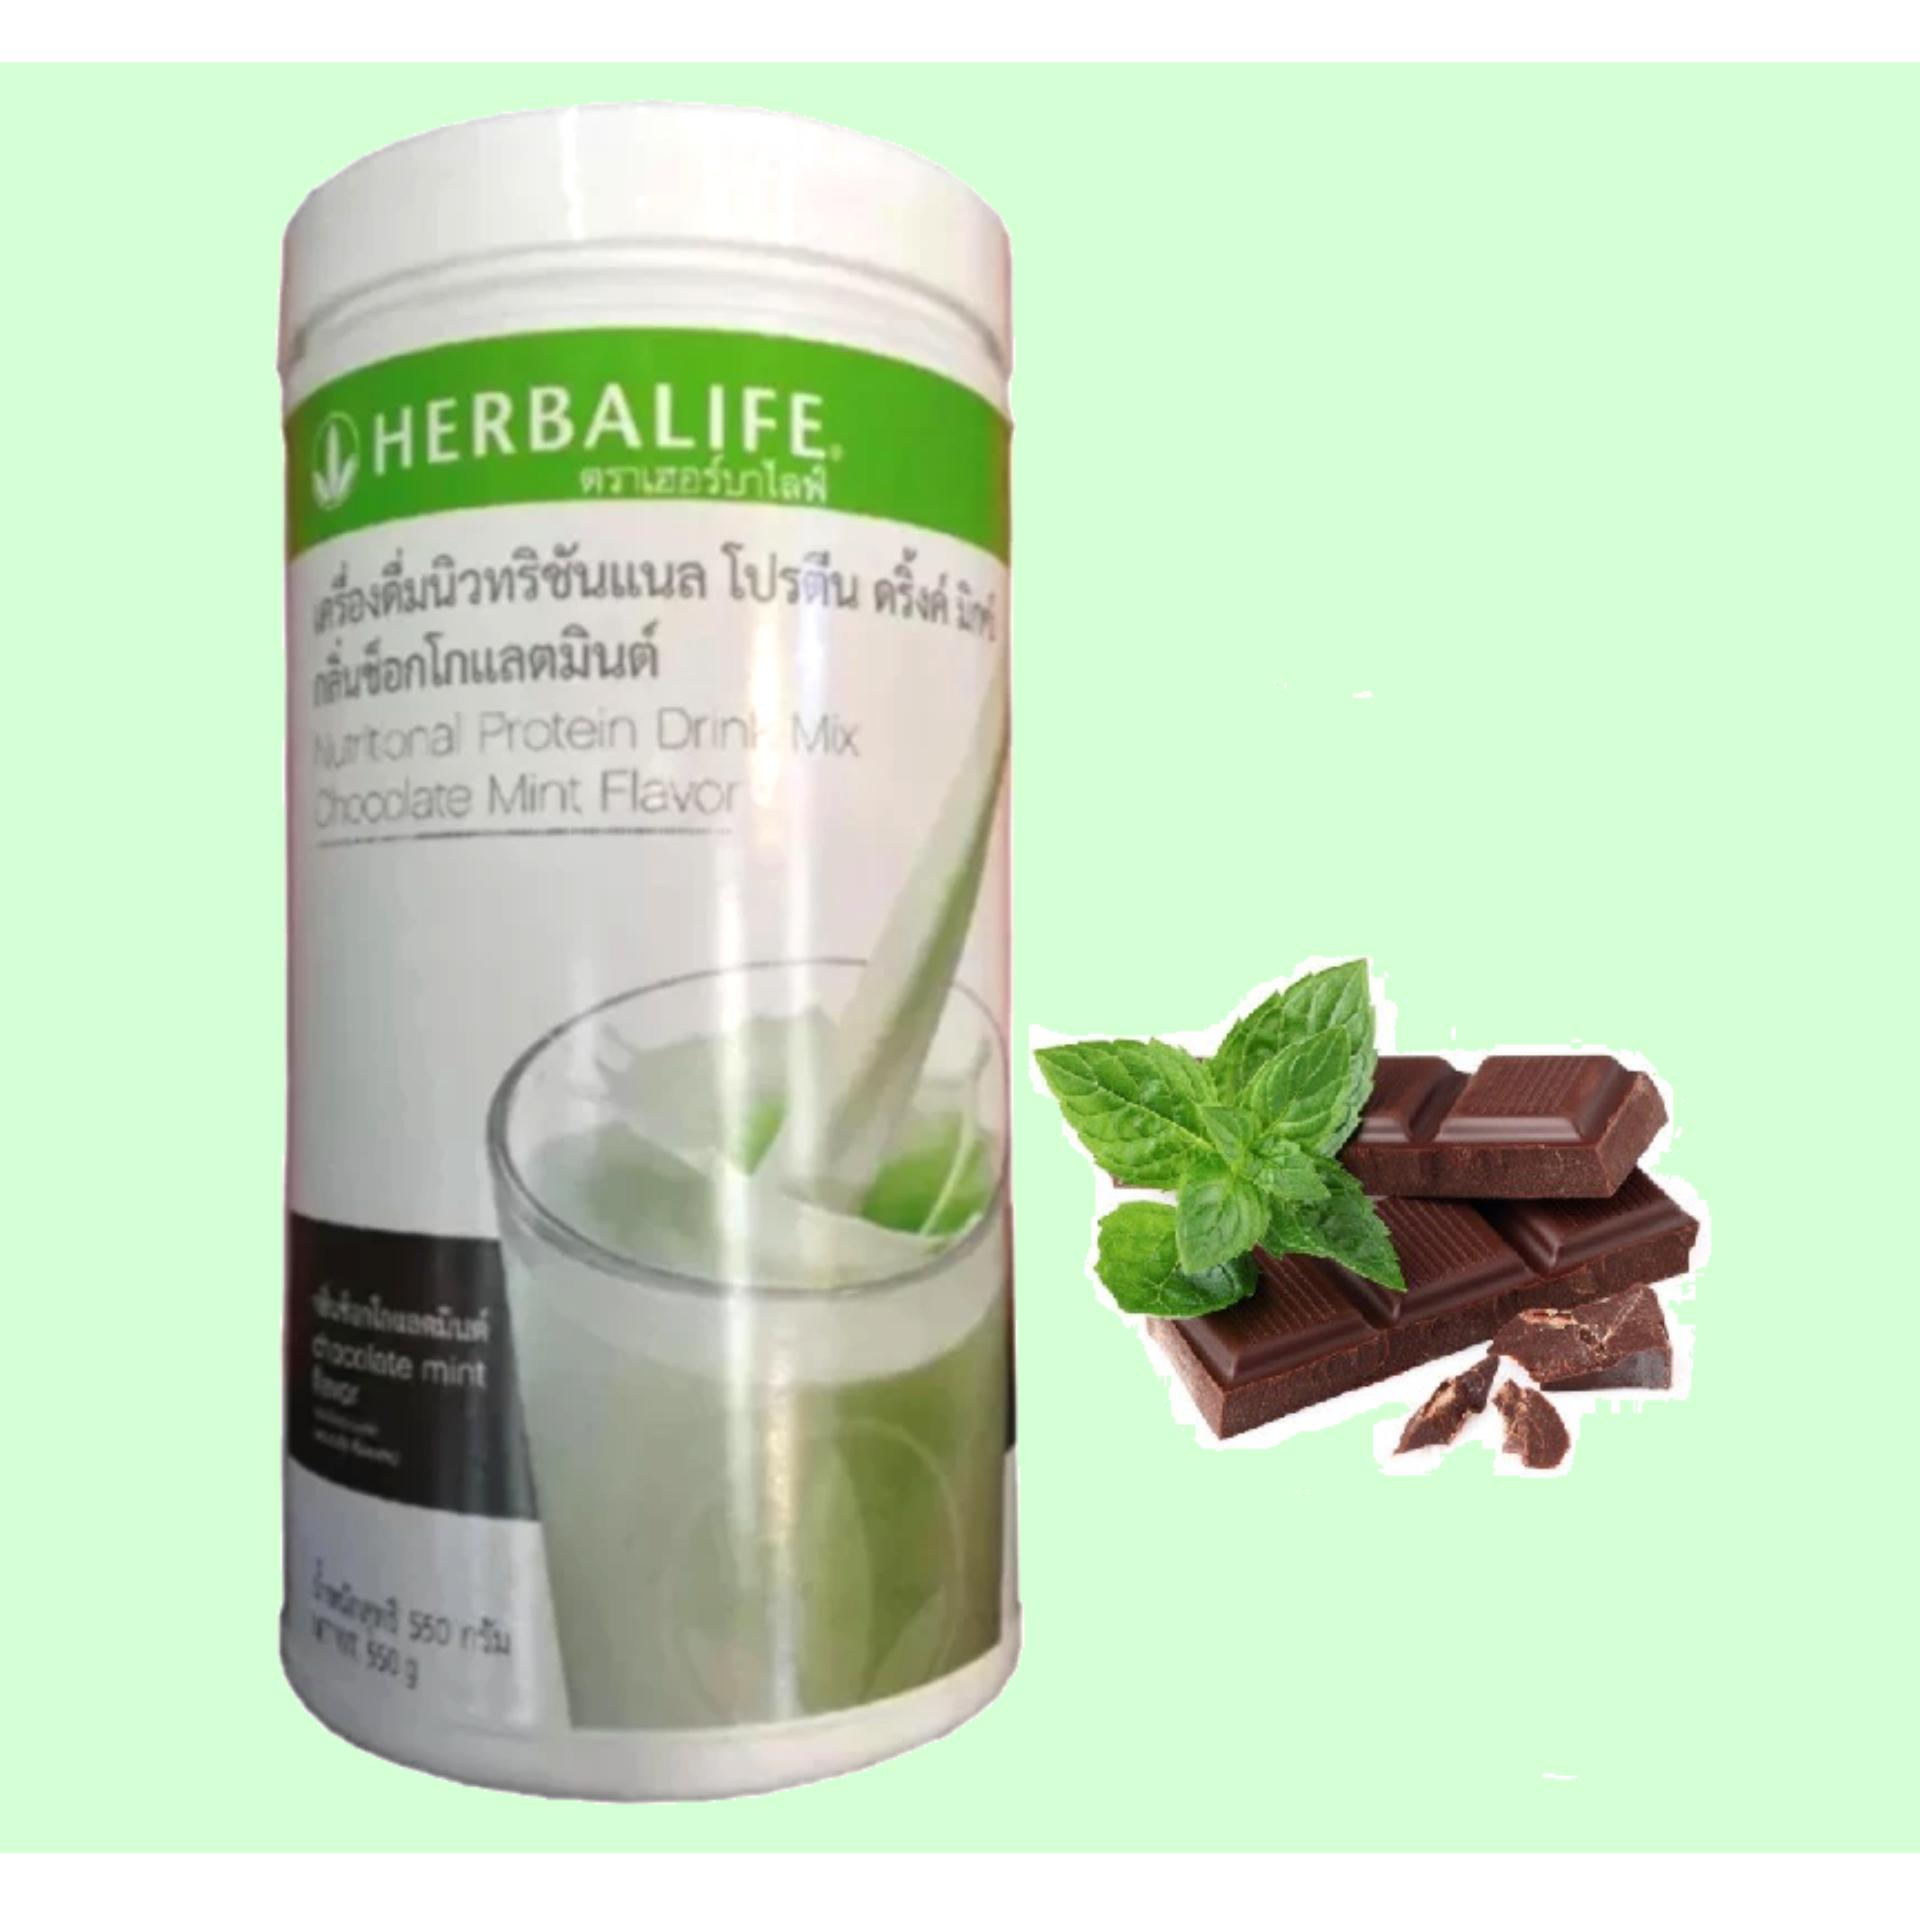 Herbalife เฮอร์บาไลฟ์ เชค นิวทริชันแนล โปรตีน มิกซ์ ผลิตภัณฑ์เสริมอาหาร โปรตีนสกัดจากถั่วเหลือง กลิ่นชอคโกแลตมินท์(550g) 1 กระปุก